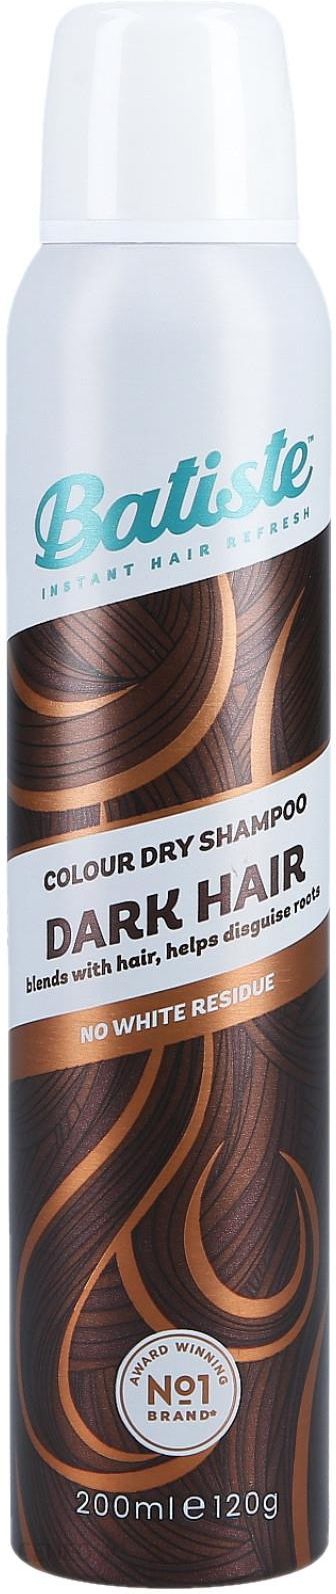 batiste suchy szampon dark&deep